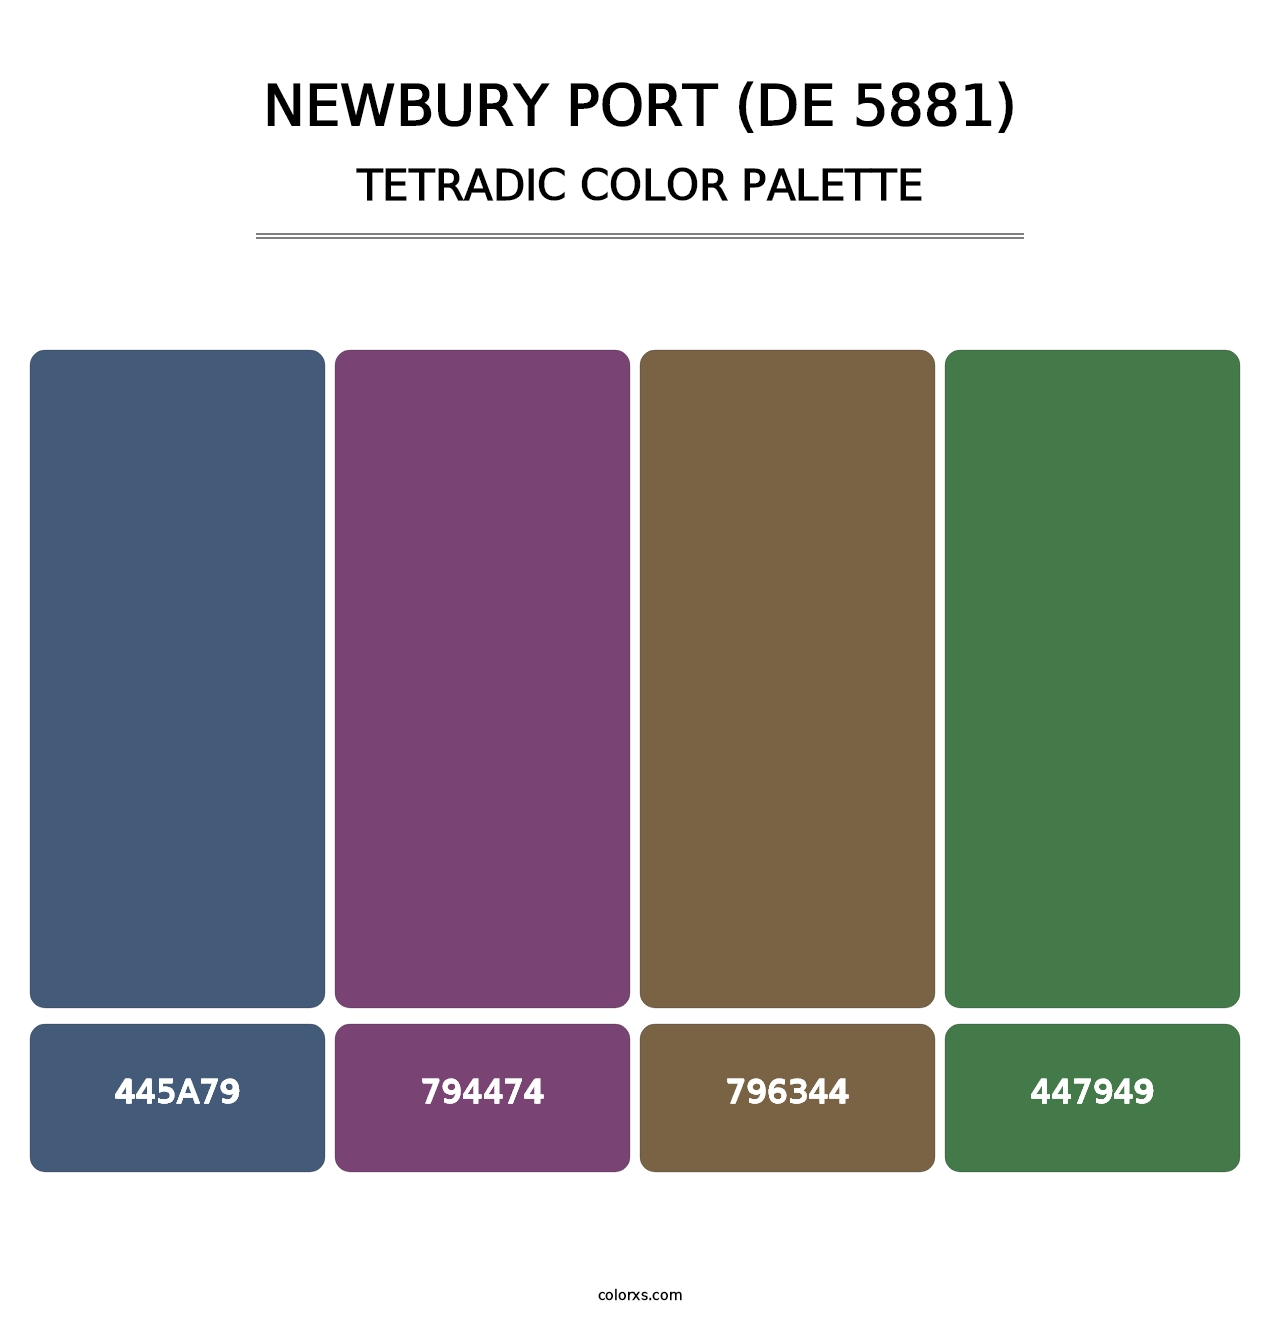 Newbury Port (DE 5881) - Tetradic Color Palette